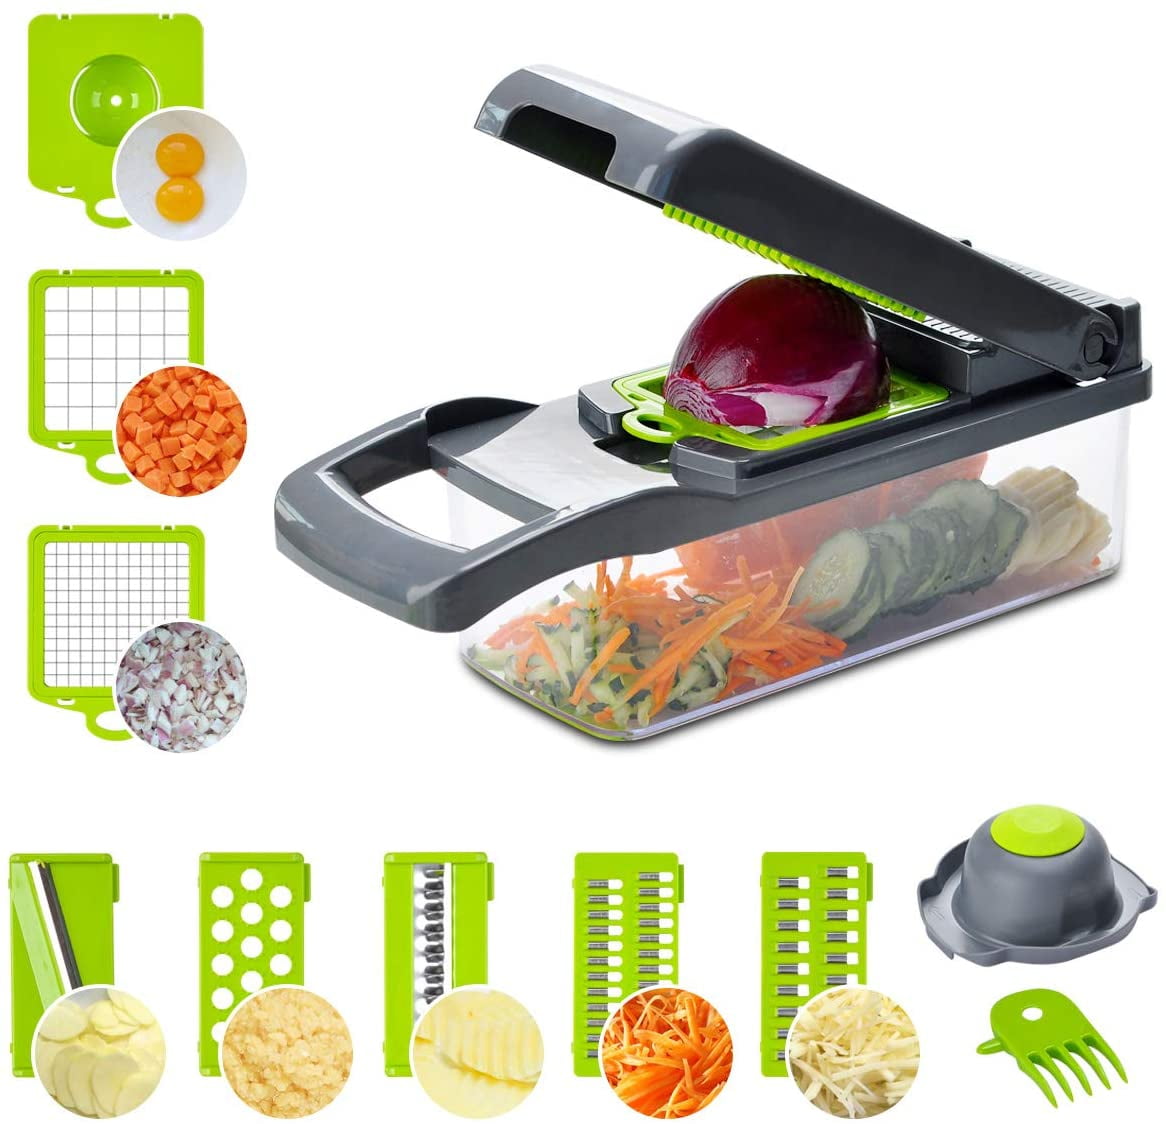 Details about   12 in1 Food Vegetable Salad Fruit Peeler Cutter Slicer Dicer Chopper Kitchen Use 